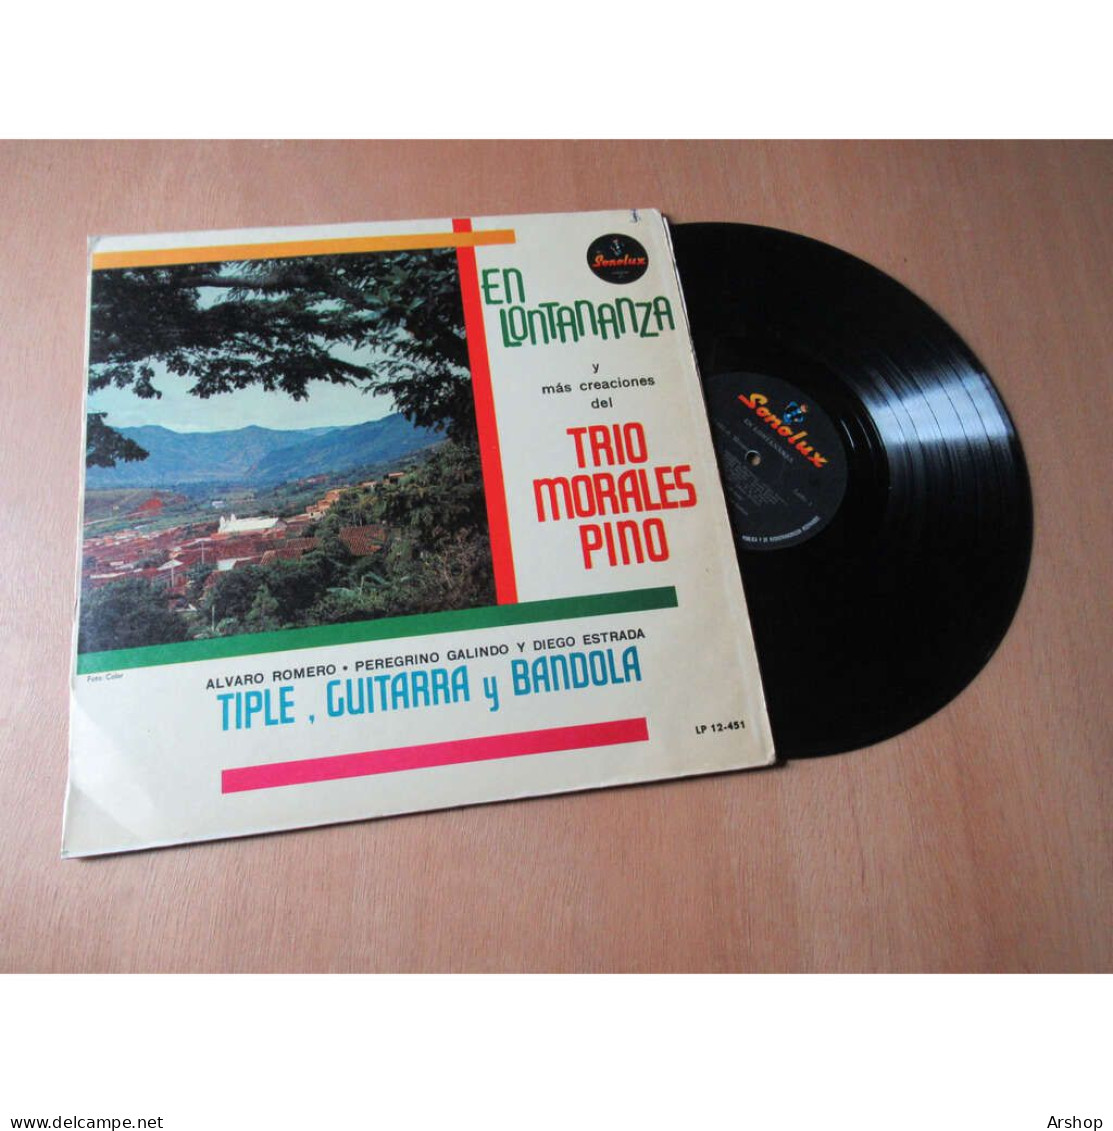 TRIO MORALES PINO En Lontananza MUSIQUE FOLK LATIN - SONOLUX COLOMBIE Lp 1976 - Música Del Mundo